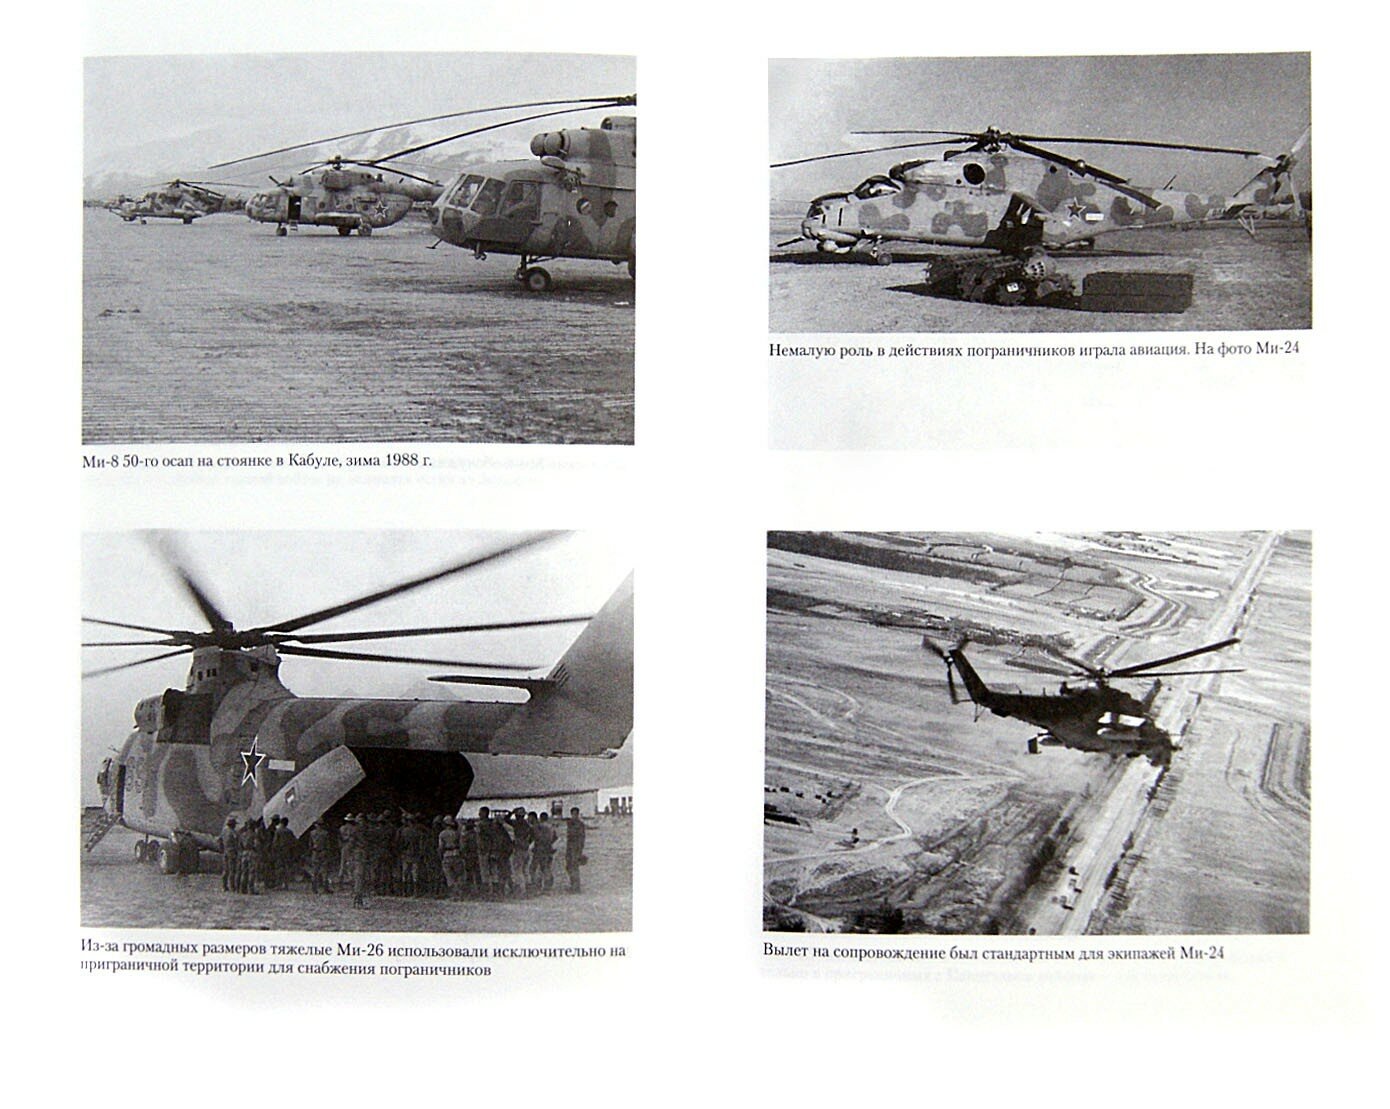 Опасное небо Афганистана. Опыт боевого применения советской авиации в локальной войне. 1979-1989 - фото №3